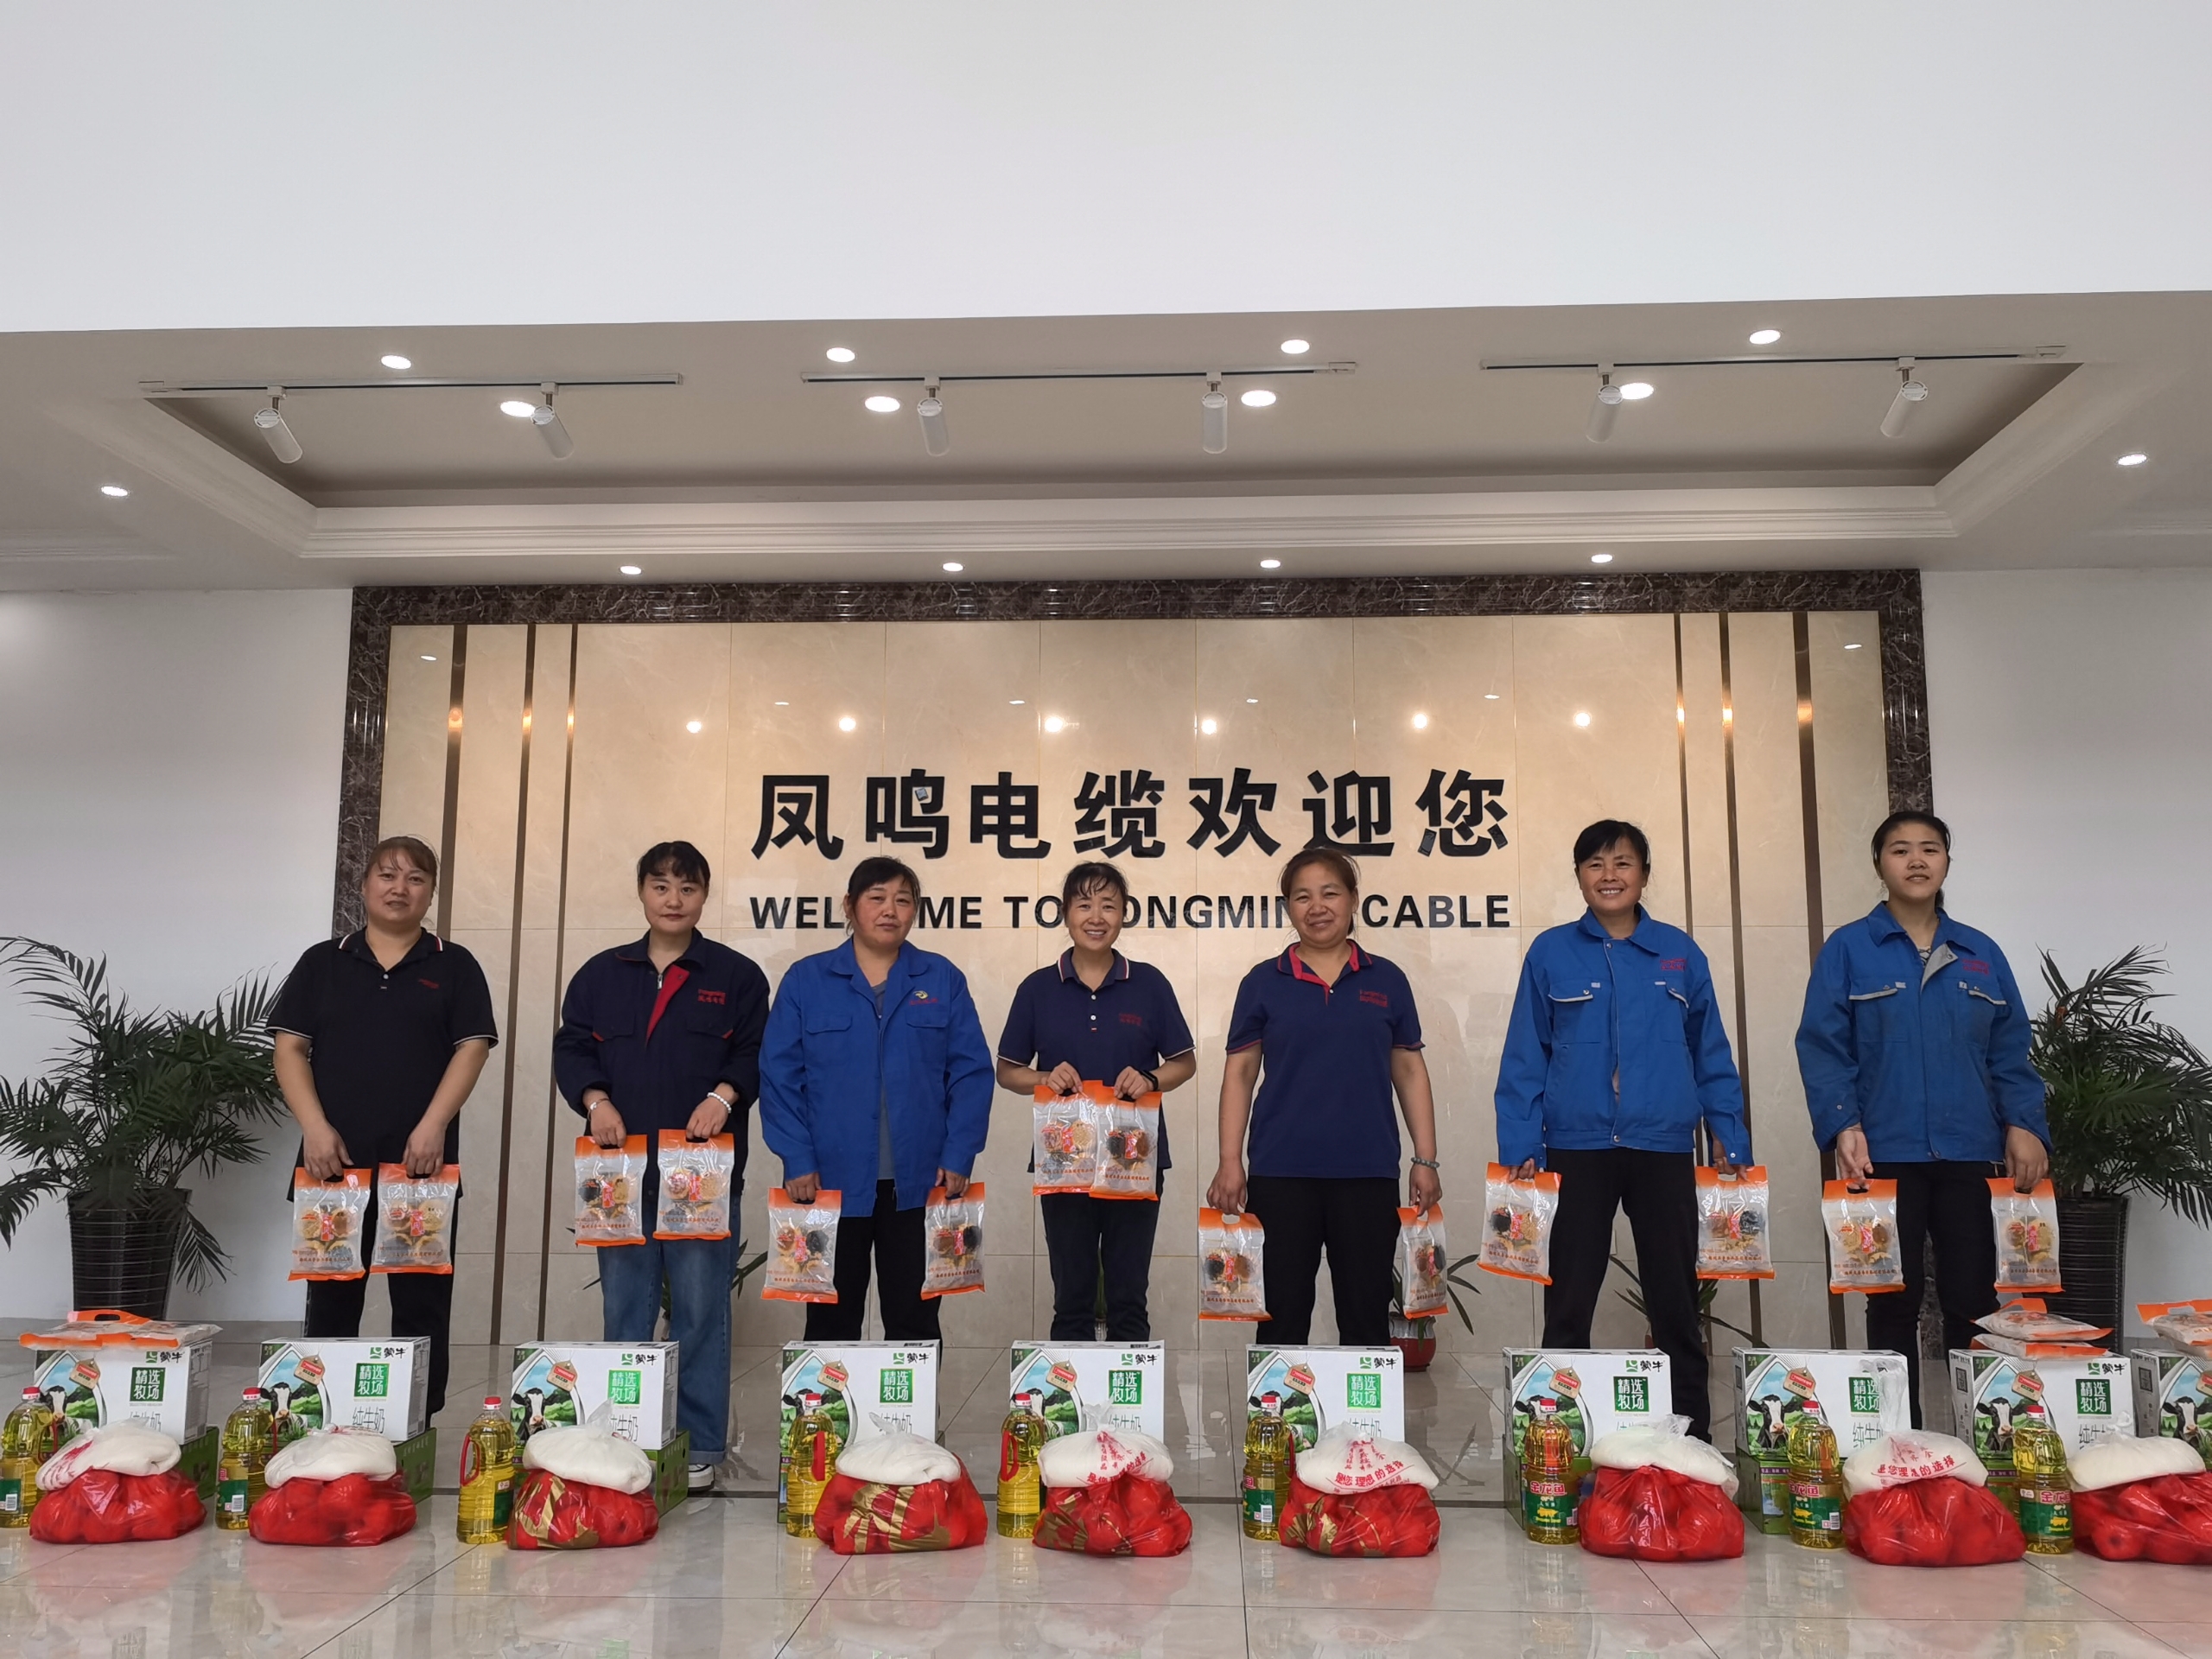 El Presidium del Congreso Popular del condado de Baoying vino a guiar el trabajo de producción de seguridad de Fongming Cable.